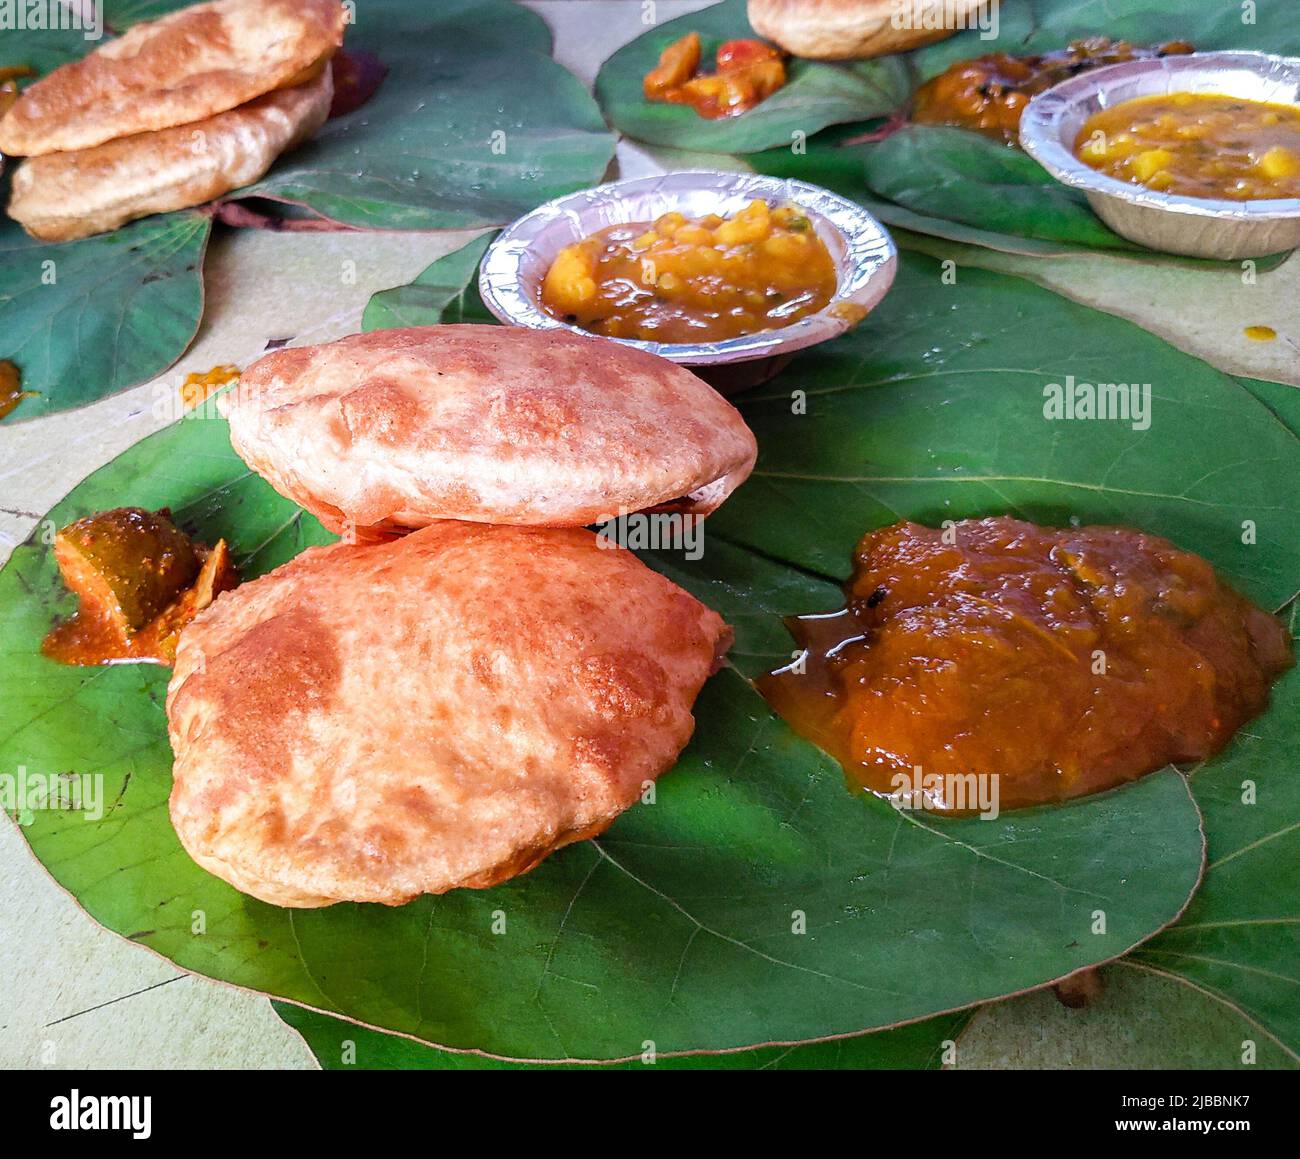 Traditionelle indische Küche, Puri bhaji wird auf grünen Blättern serviert. Uttarakhand Indien. Stockfoto